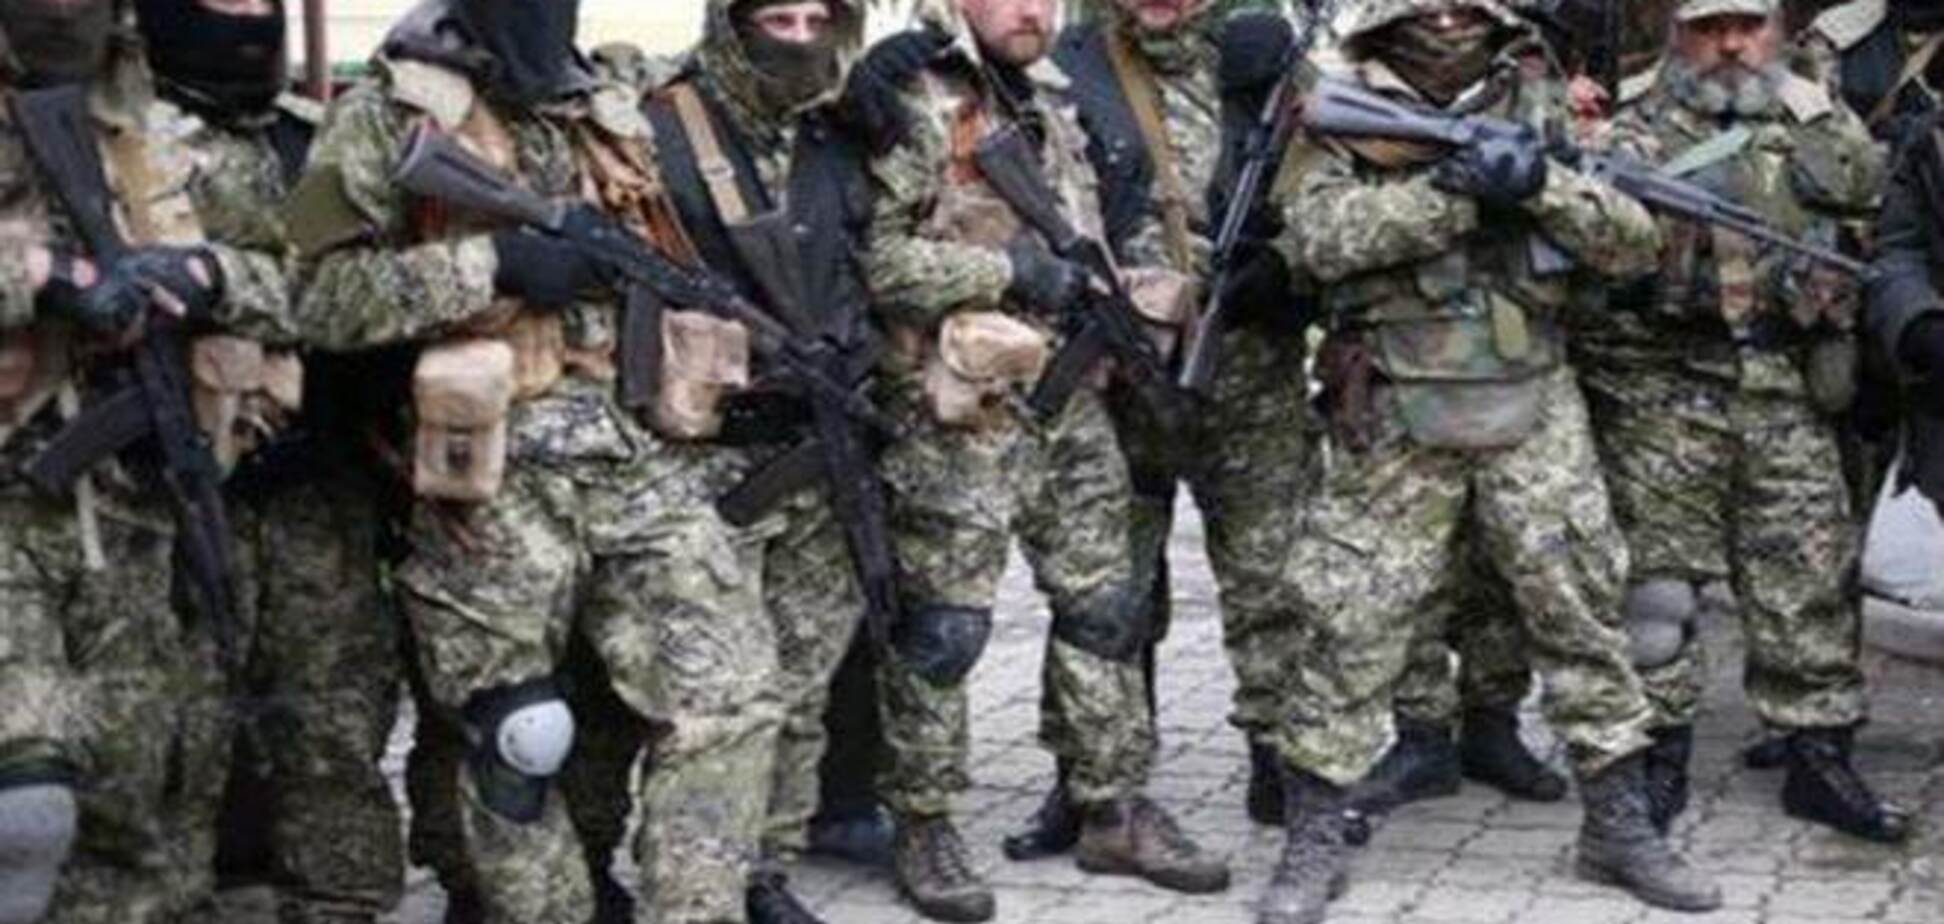 СБУ затримала бойовиків-організаторів захоплення адмінбудівель у Луганську, Слов'янську і Артемівську